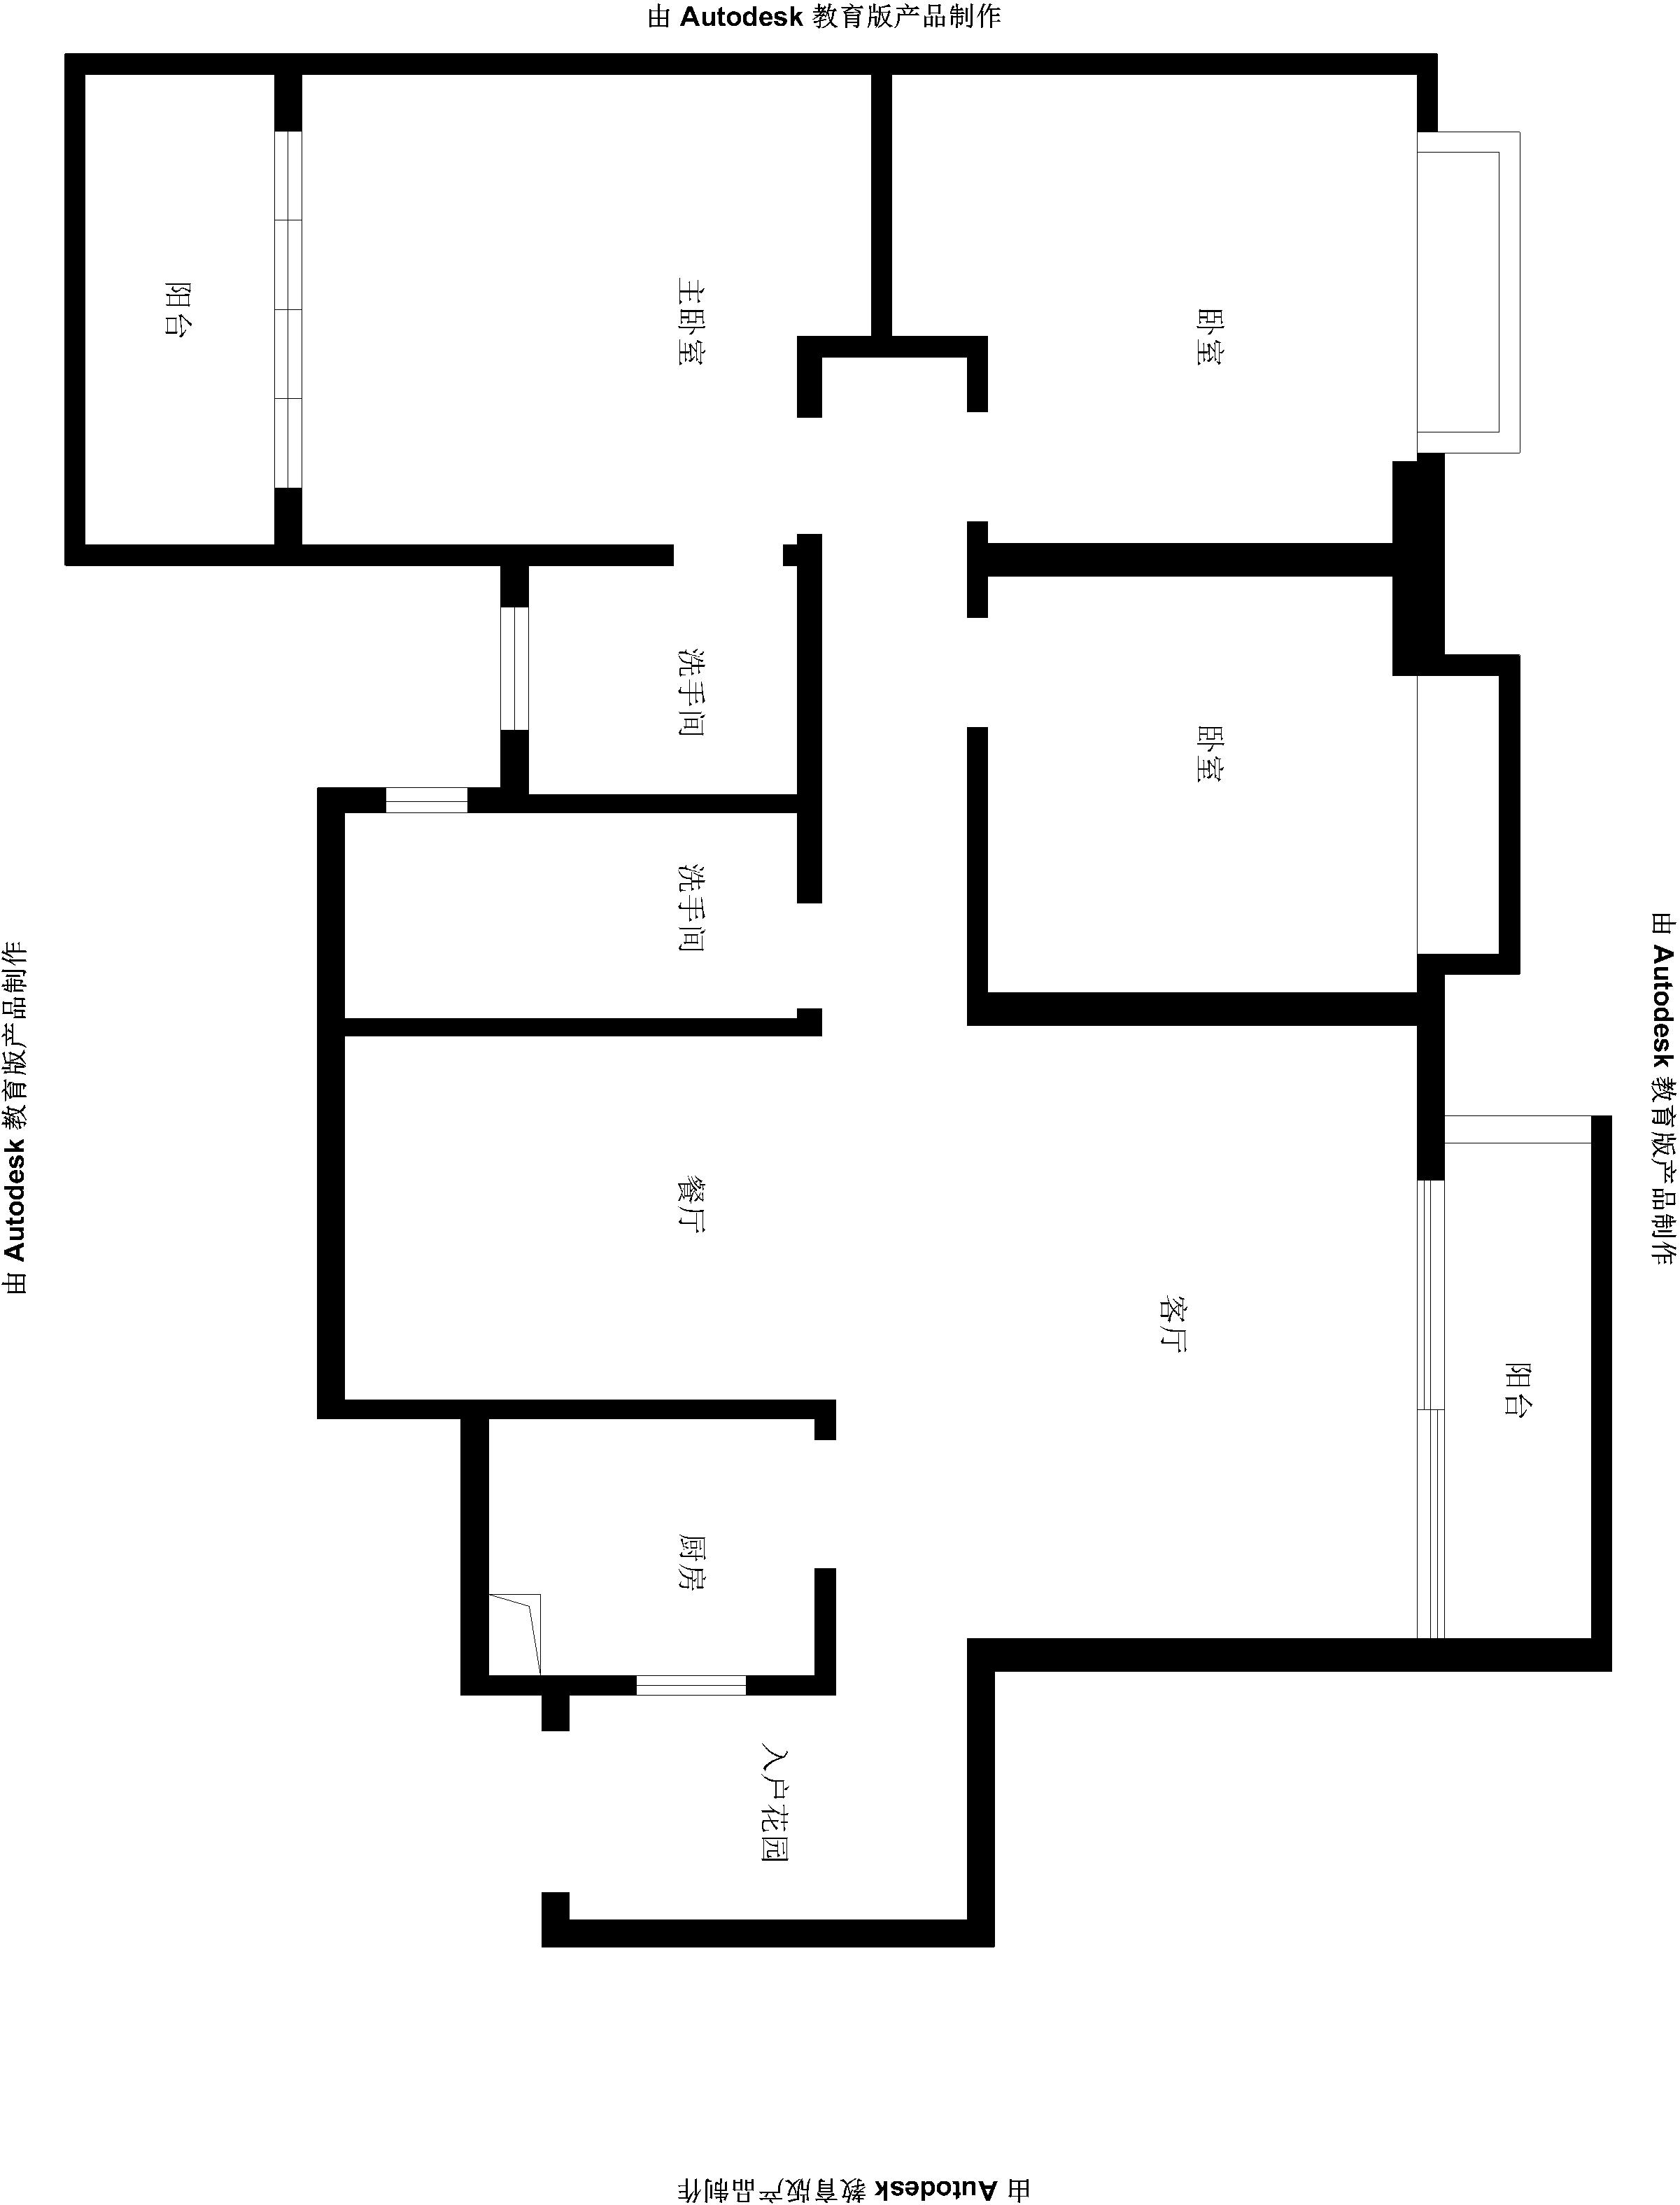 御东和府 现代 中式 140平米 三居 家居 生活 装修 报价 户型图图片来自徐丽娟在御东和府-现代中式风格-三居室的分享